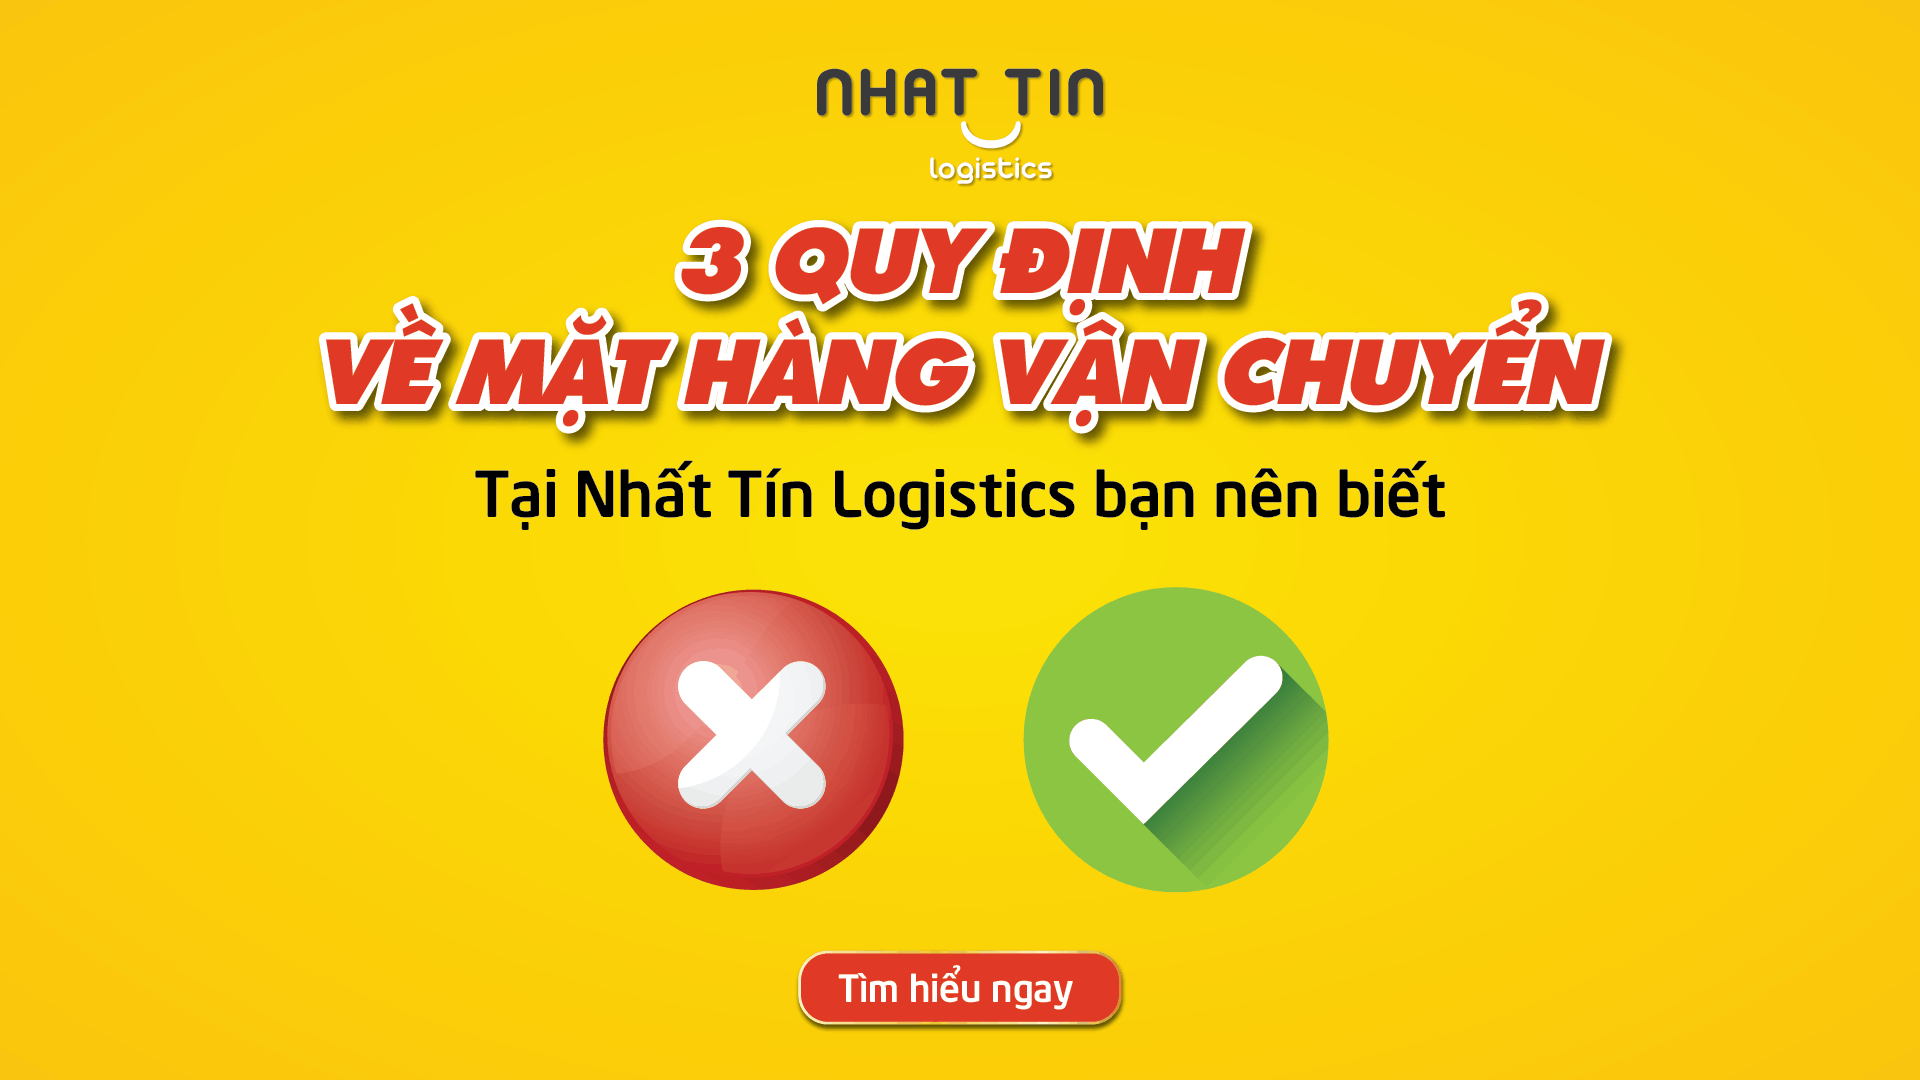 3 Quy định về mặt hàng vận chuyển của Nhất Tín Logistics bạn nên biết